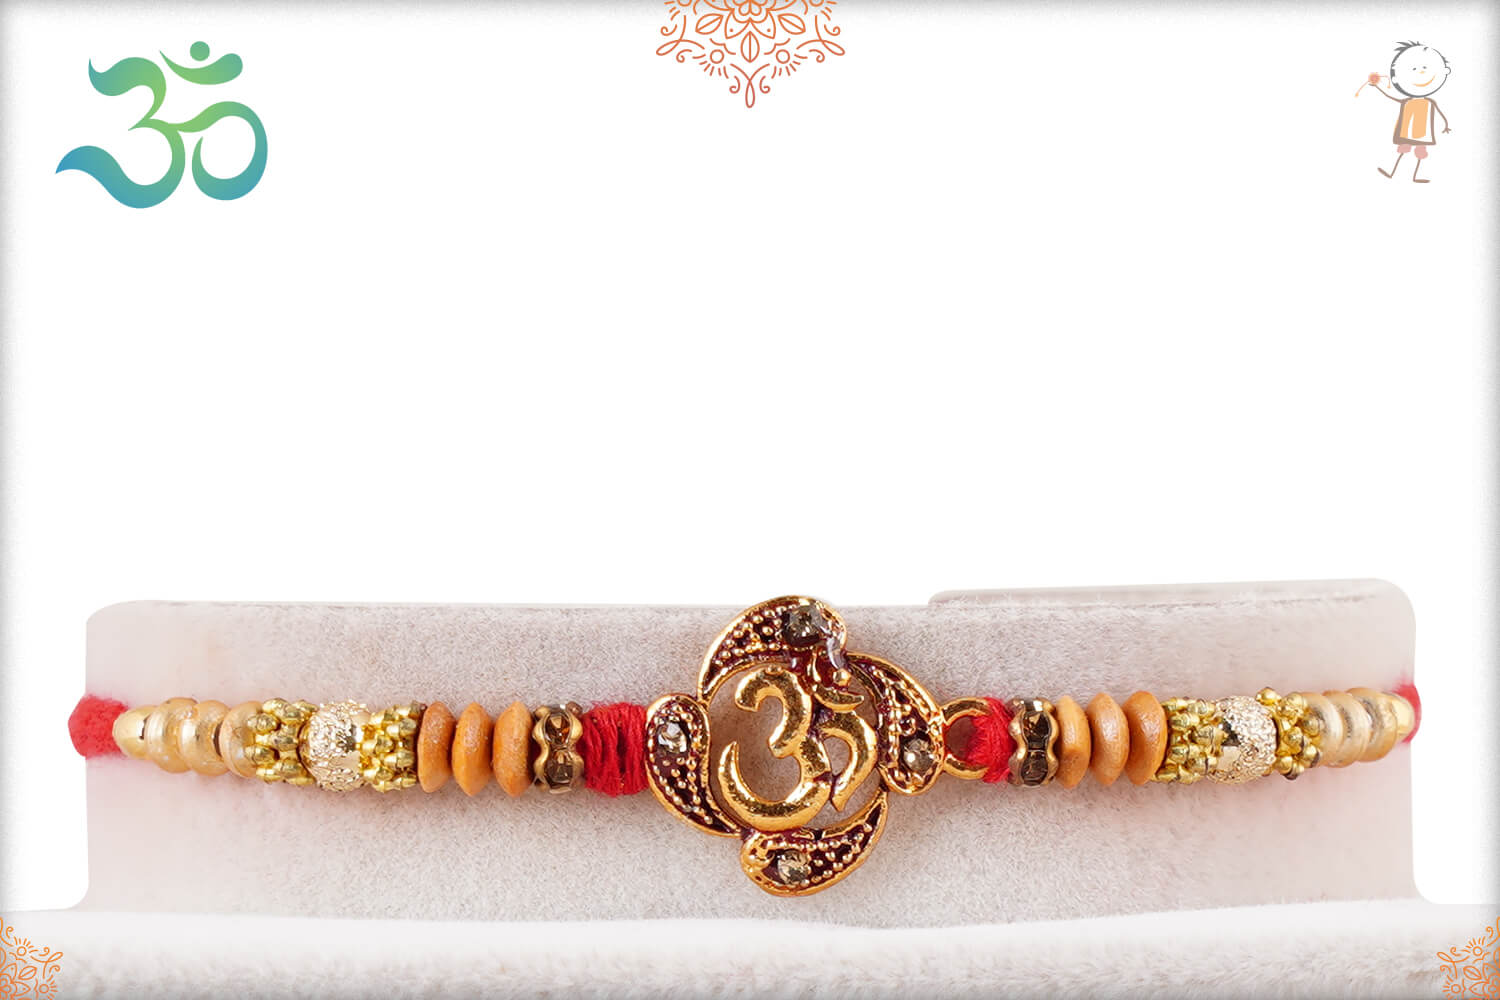 Designer Golden OM Rakhi with Sandalwood Beads